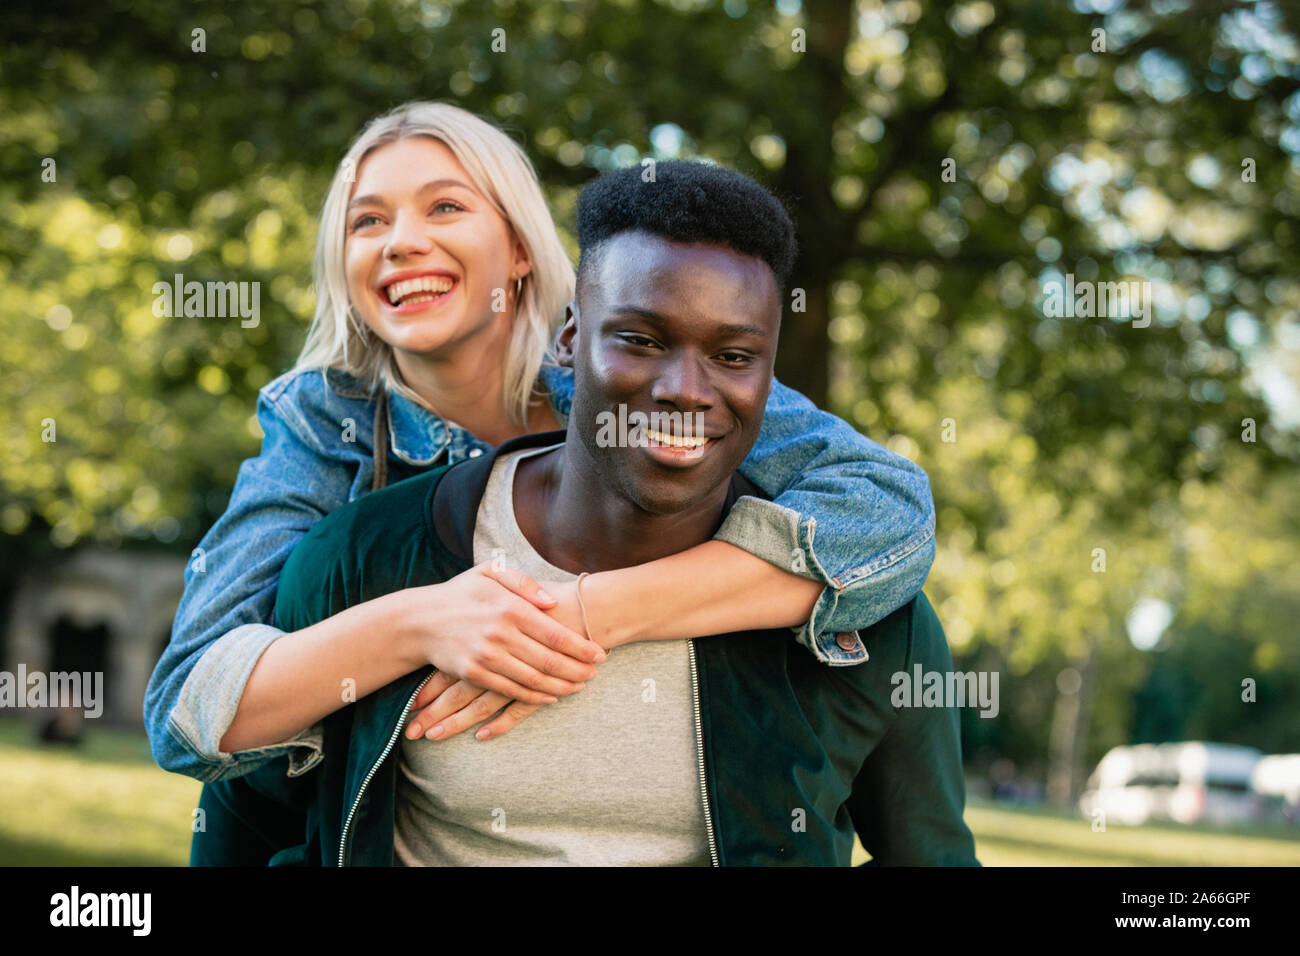 Eine Nahaufnahme von einem Mann, der eine Frau ein Huckepack heben durch einen Park. Sie sind beide lächelnd. Stockfoto